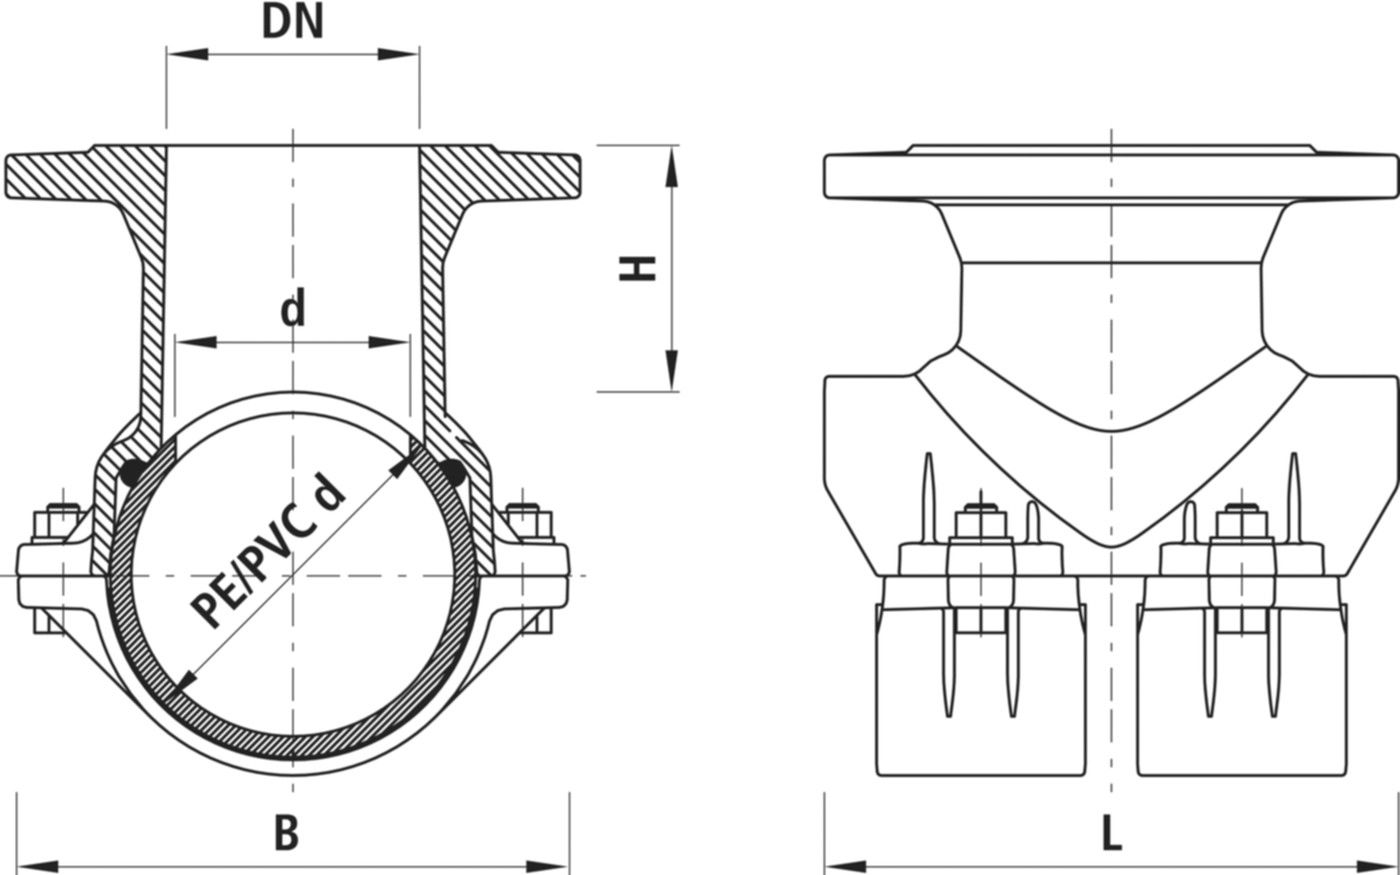 Haku-Anbohrschelle mit Flansch 5230 d 200mm / DN 100 - Hawle Hausanschluss- und Anbohrarmaturen